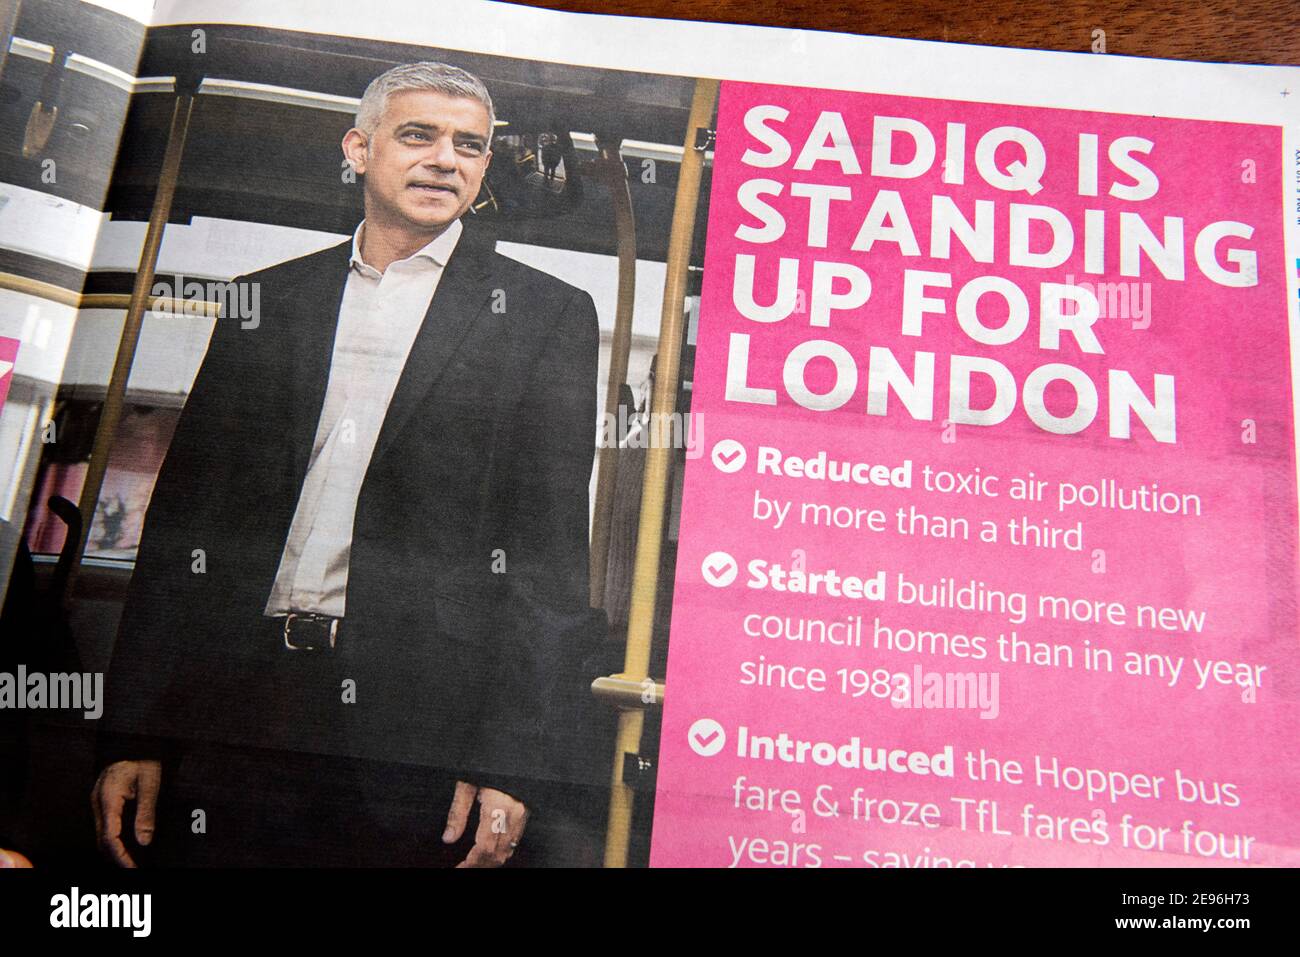 London Mayoral Wahl Flyer, Flugblatt oder Zeitung geleitet Sadiq setzt sich für London mit Liste der Versprechen. Die Wahlen finden am 6th. Mai 20 statt. Nur für redaktionelle Zwecke Stockfoto